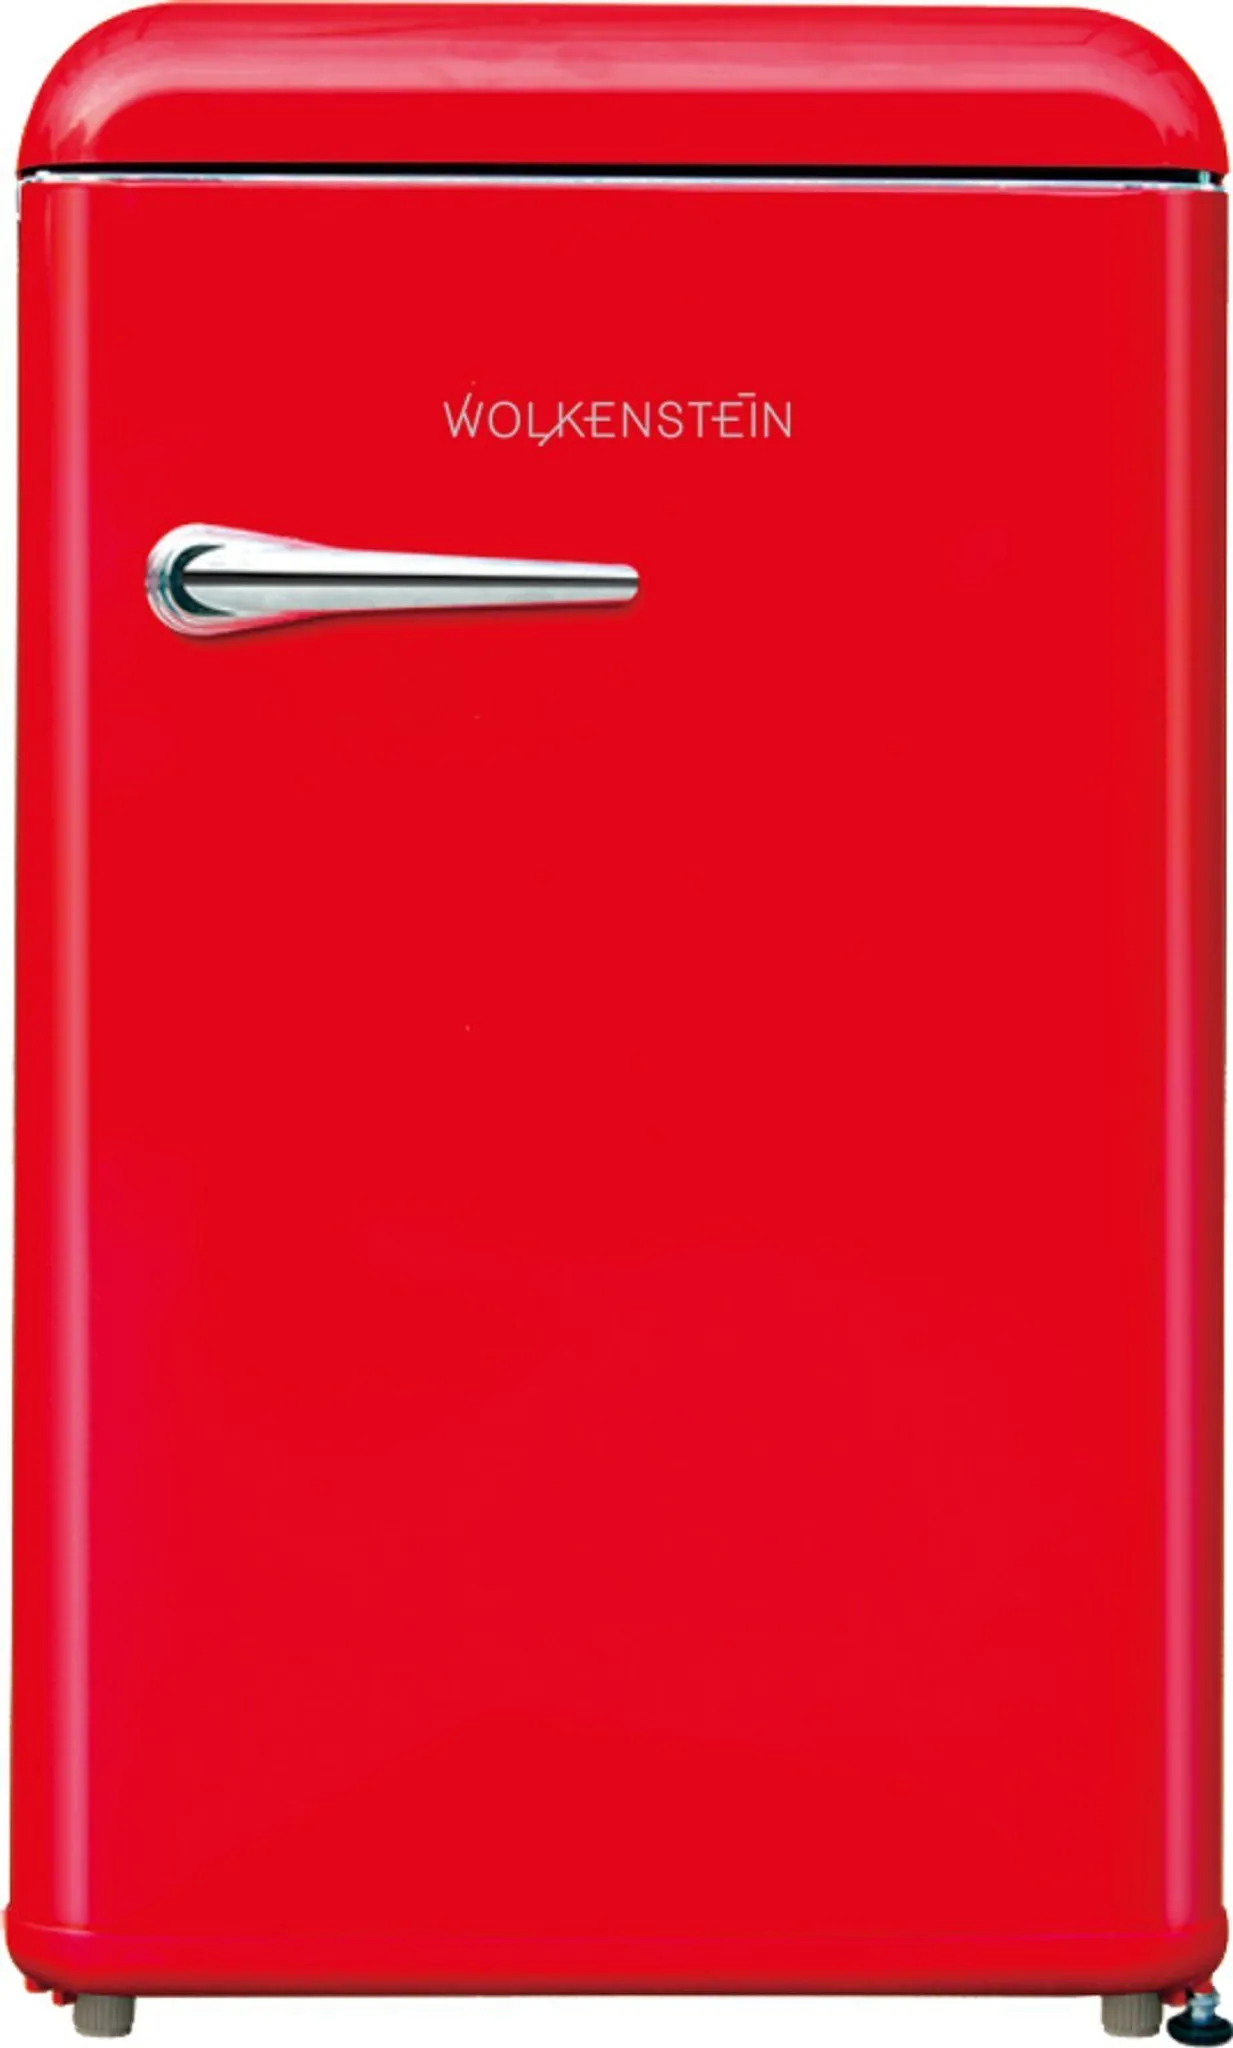 WOLKENSTEIN WKS125RT FR Retro - Kühlschrank 